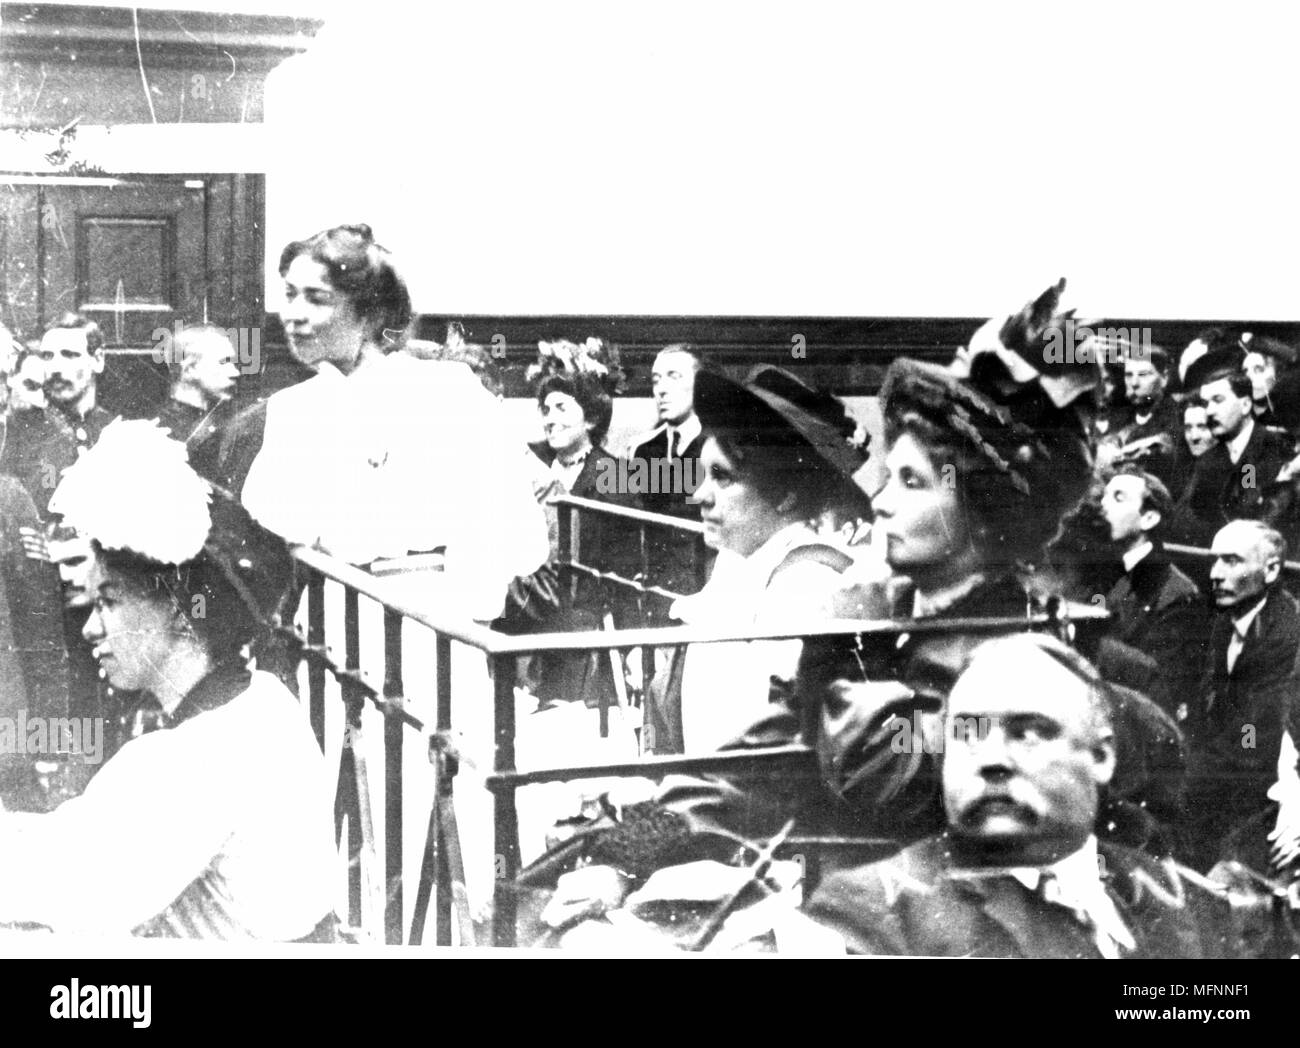 Mouvement des suffragettes britanniques. Mme Pankhurst (à droite) Mme Flora Drummond et Cristabel Pankhurst dans le dock accusé de complot, le 14 octobre 1908 lors de la lutte pour le vote des femmes. Photographie. Banque D'Images